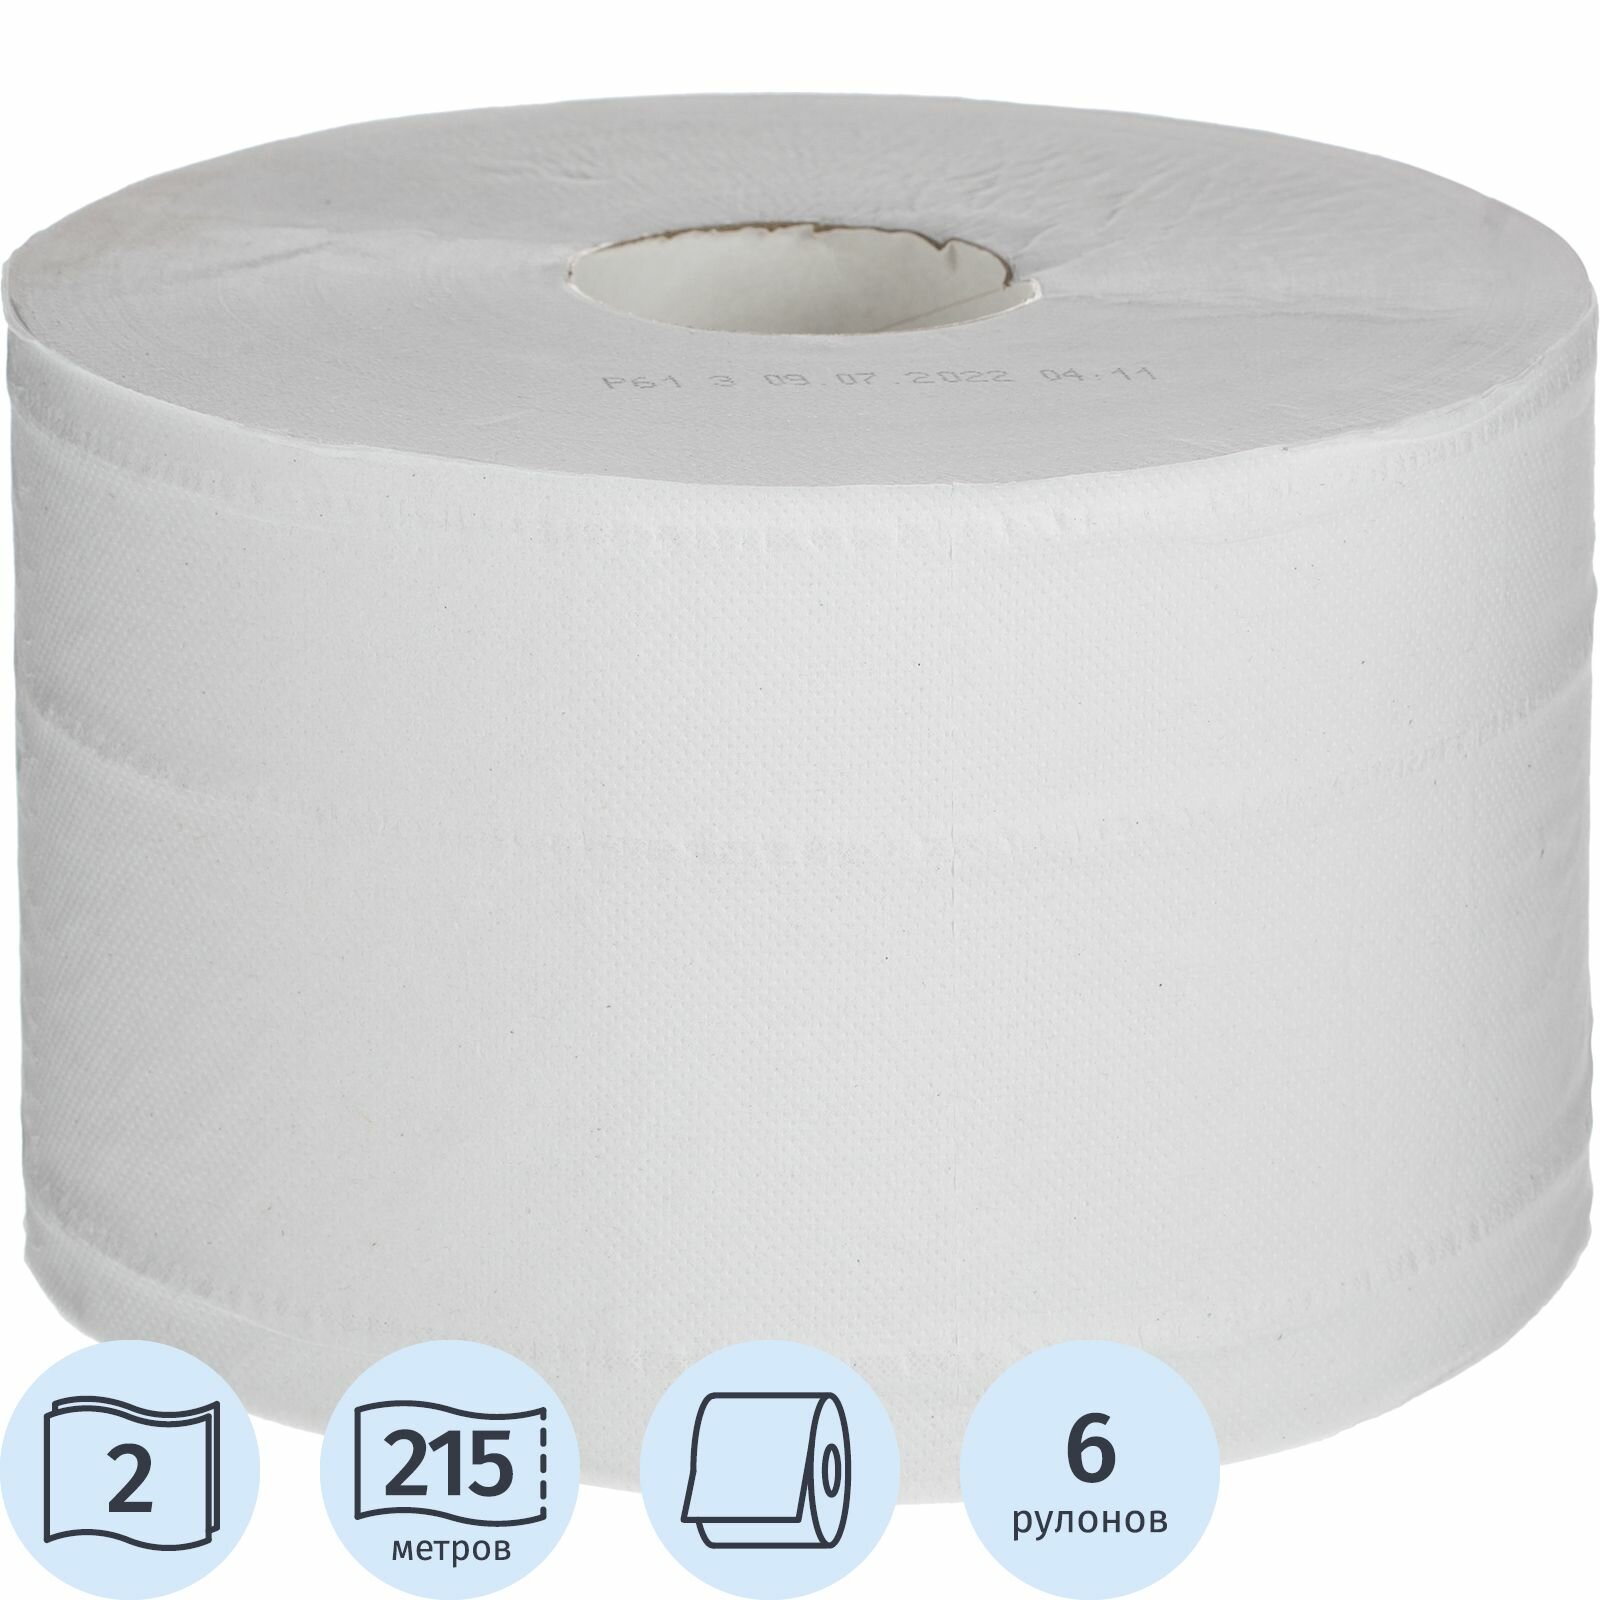 Туалетная бумага Luscan Professional, для диспенсера, 2 слоя, 6 рулонов по 215 метров